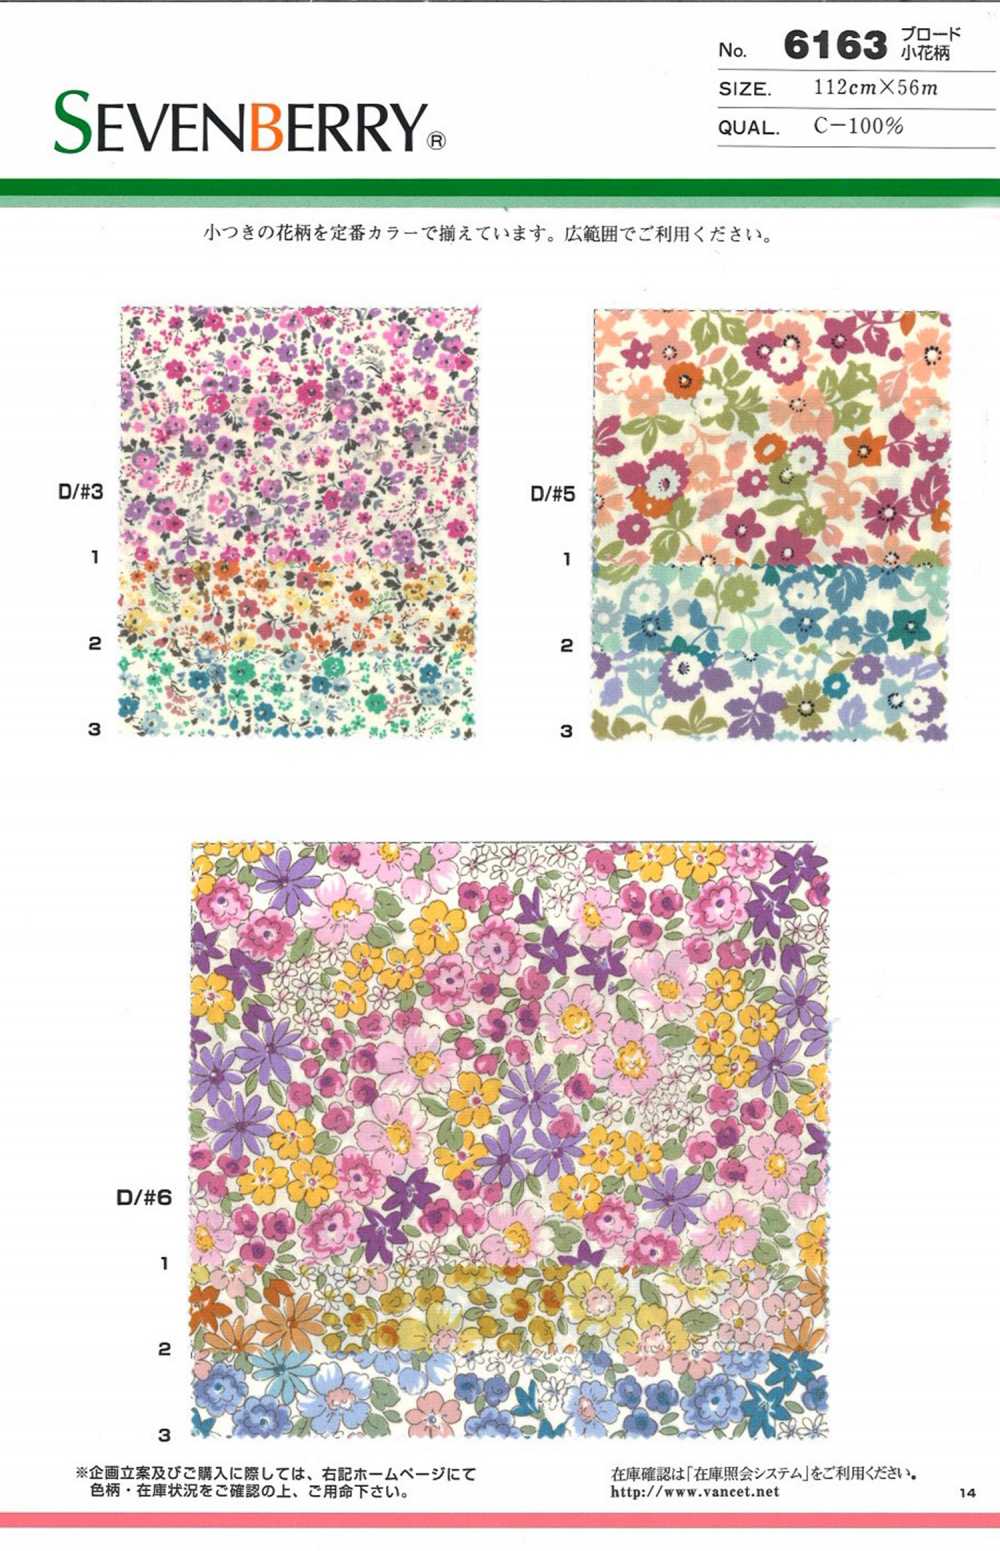 6163 SEVENBERRY Broadcloth Floret Pattern[Textile / Fabric] VANCET